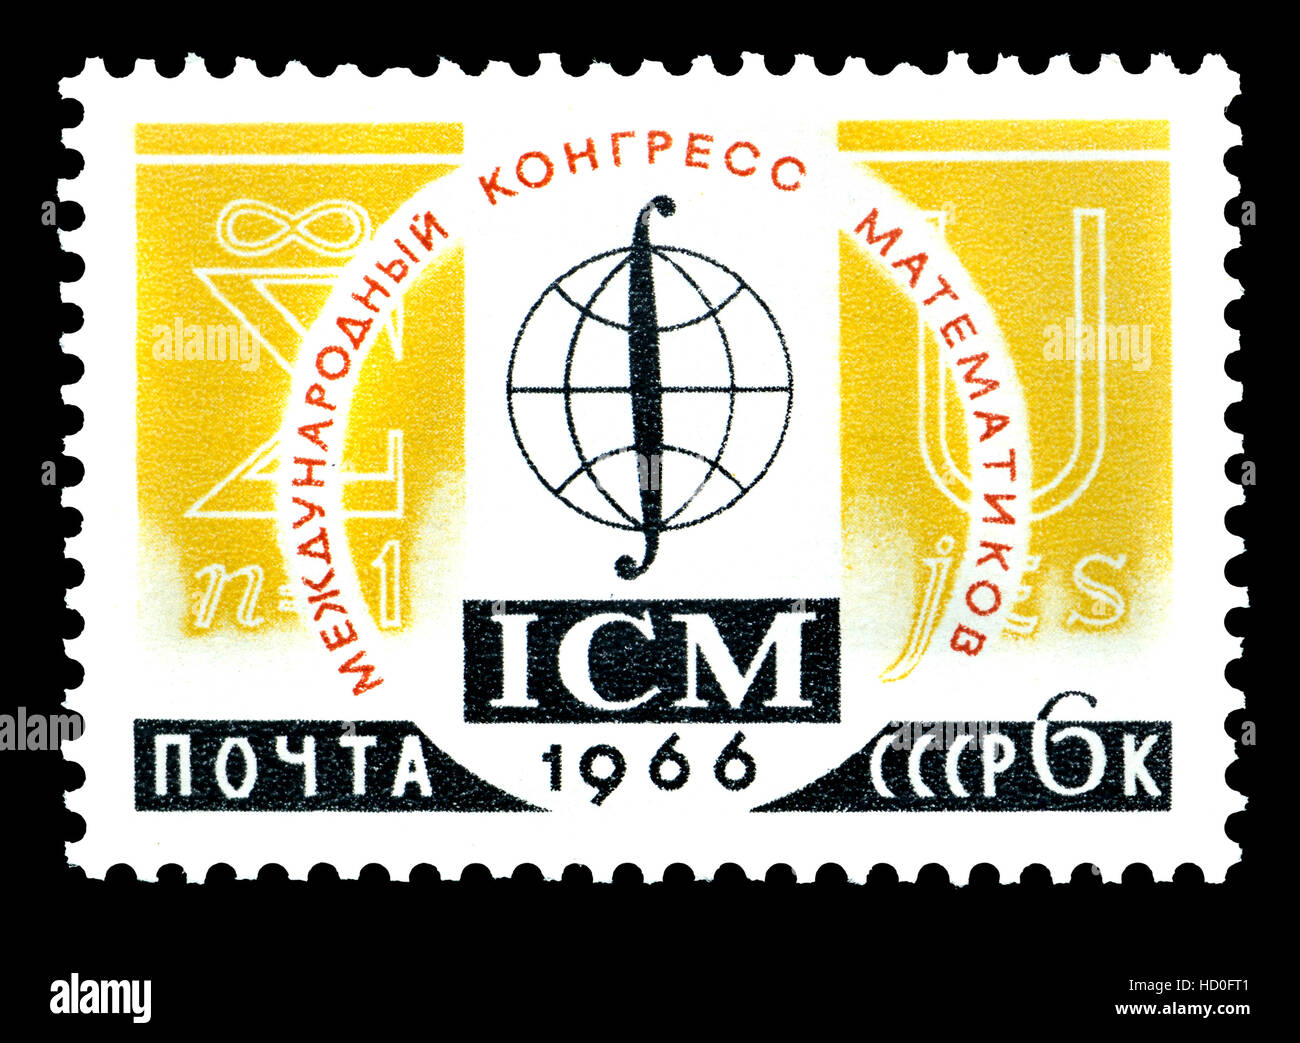 Timbre de l'Union soviétique (1966) : Congrès international de mathématiques, Moscou 1966 Banque D'Images